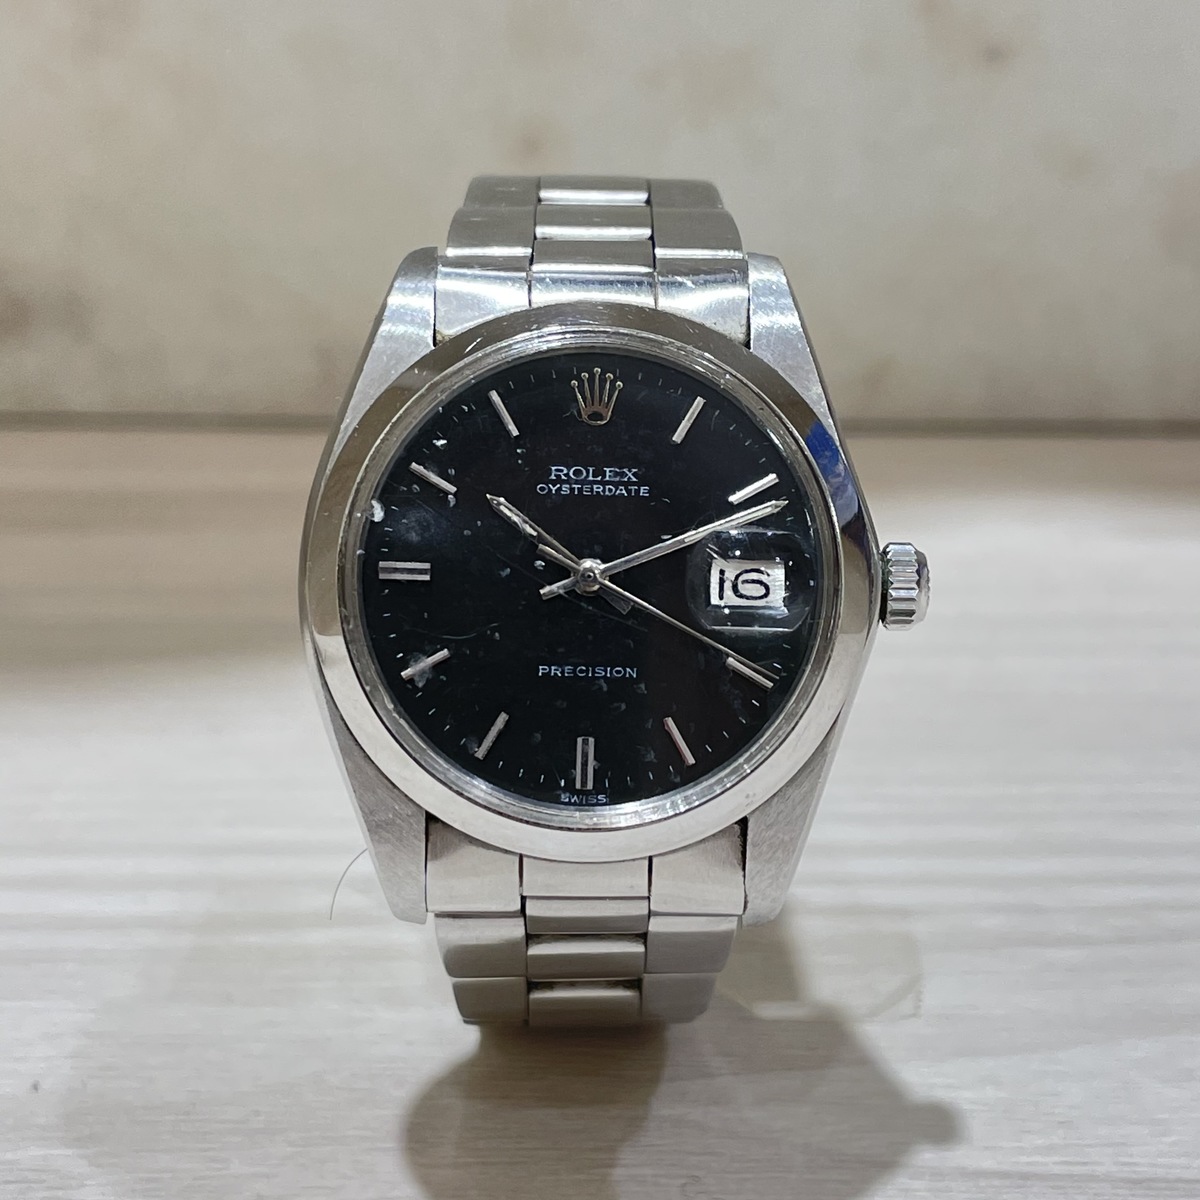 ロレックスの黒文字盤 オイスターデイト プレジション 6694 年式不明 自動巻き 腕時計の買取実績です。